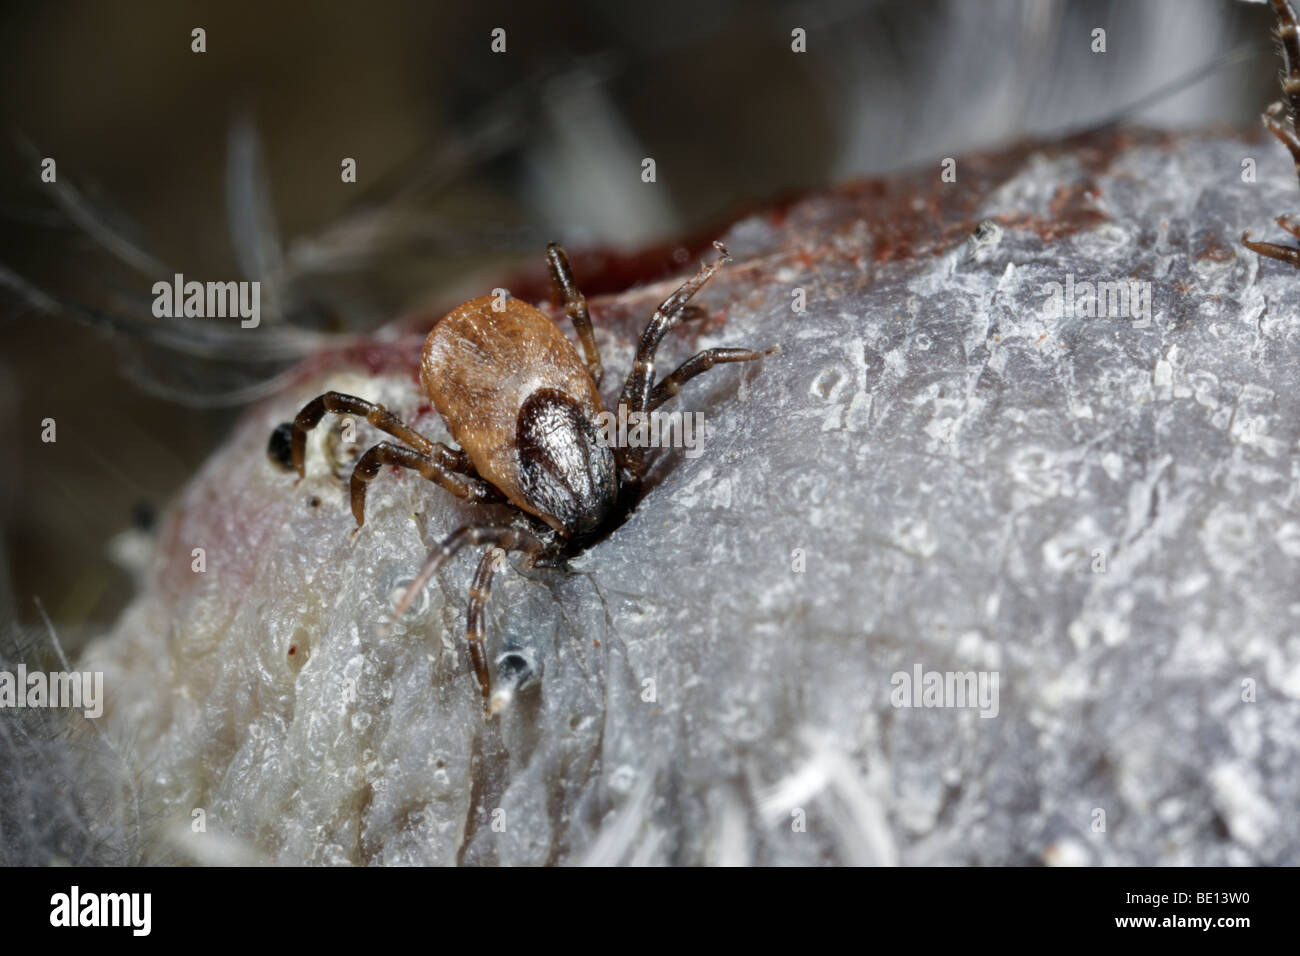 Bird Tick Ixiodes brunneus Stock Photo